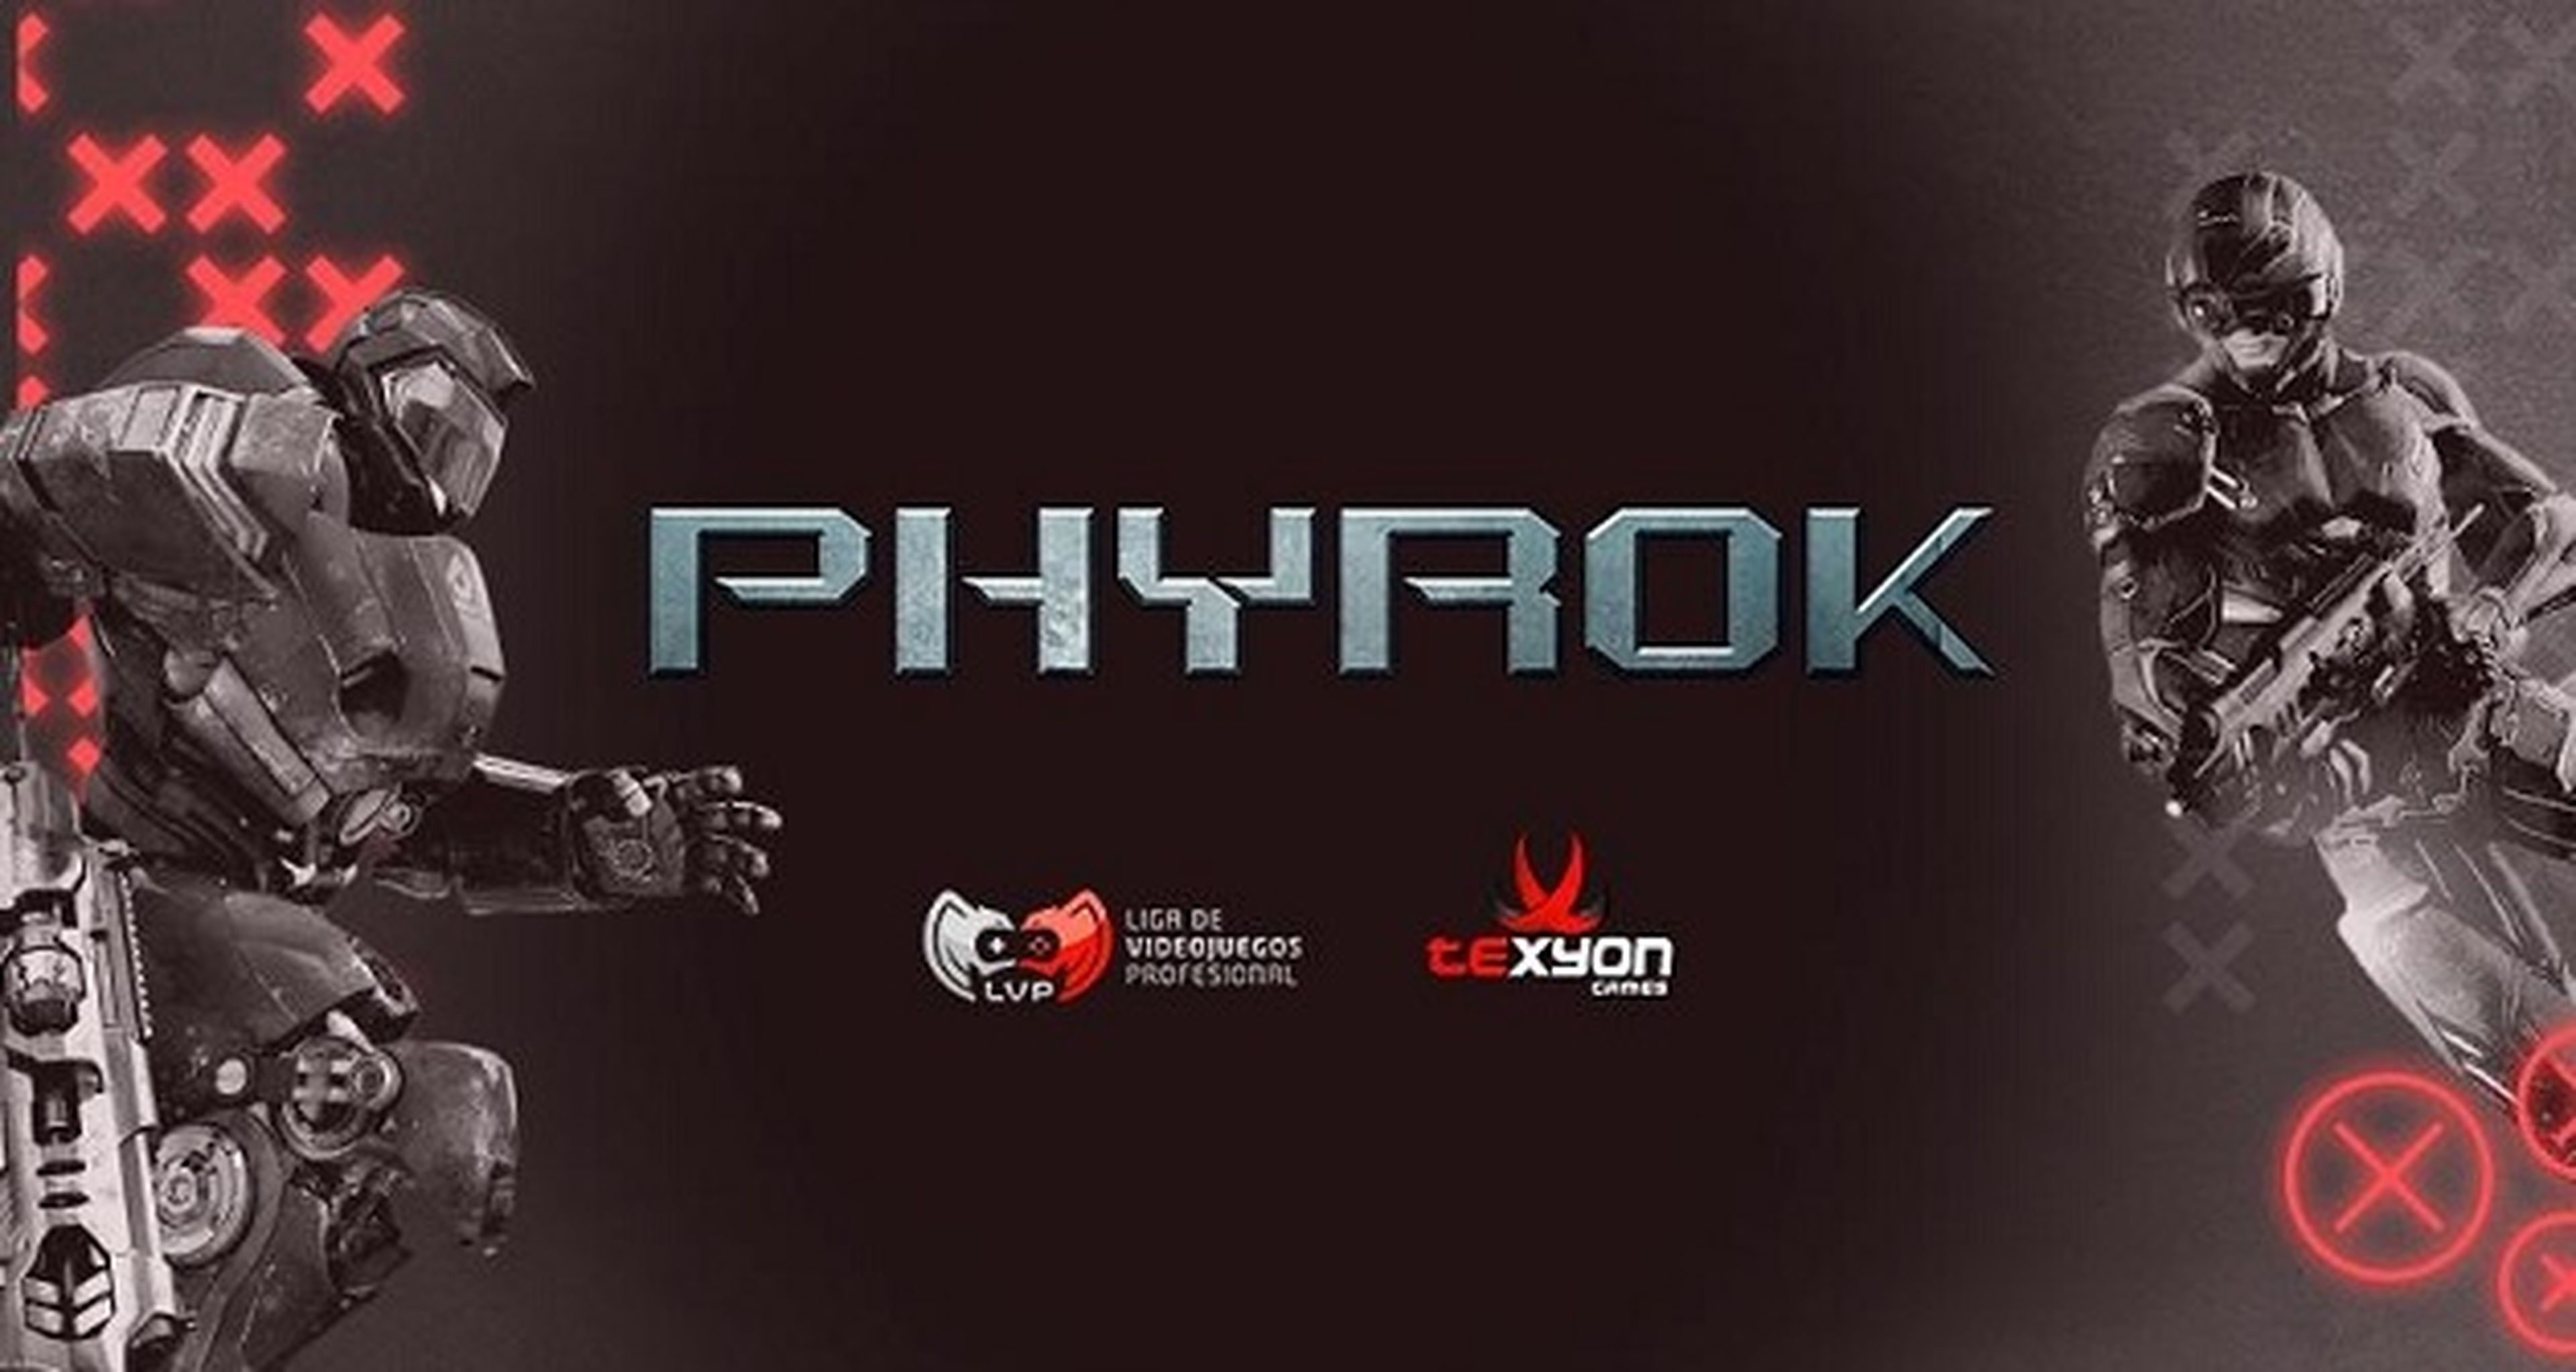 LVP introduce Phyrok en sus competiciones